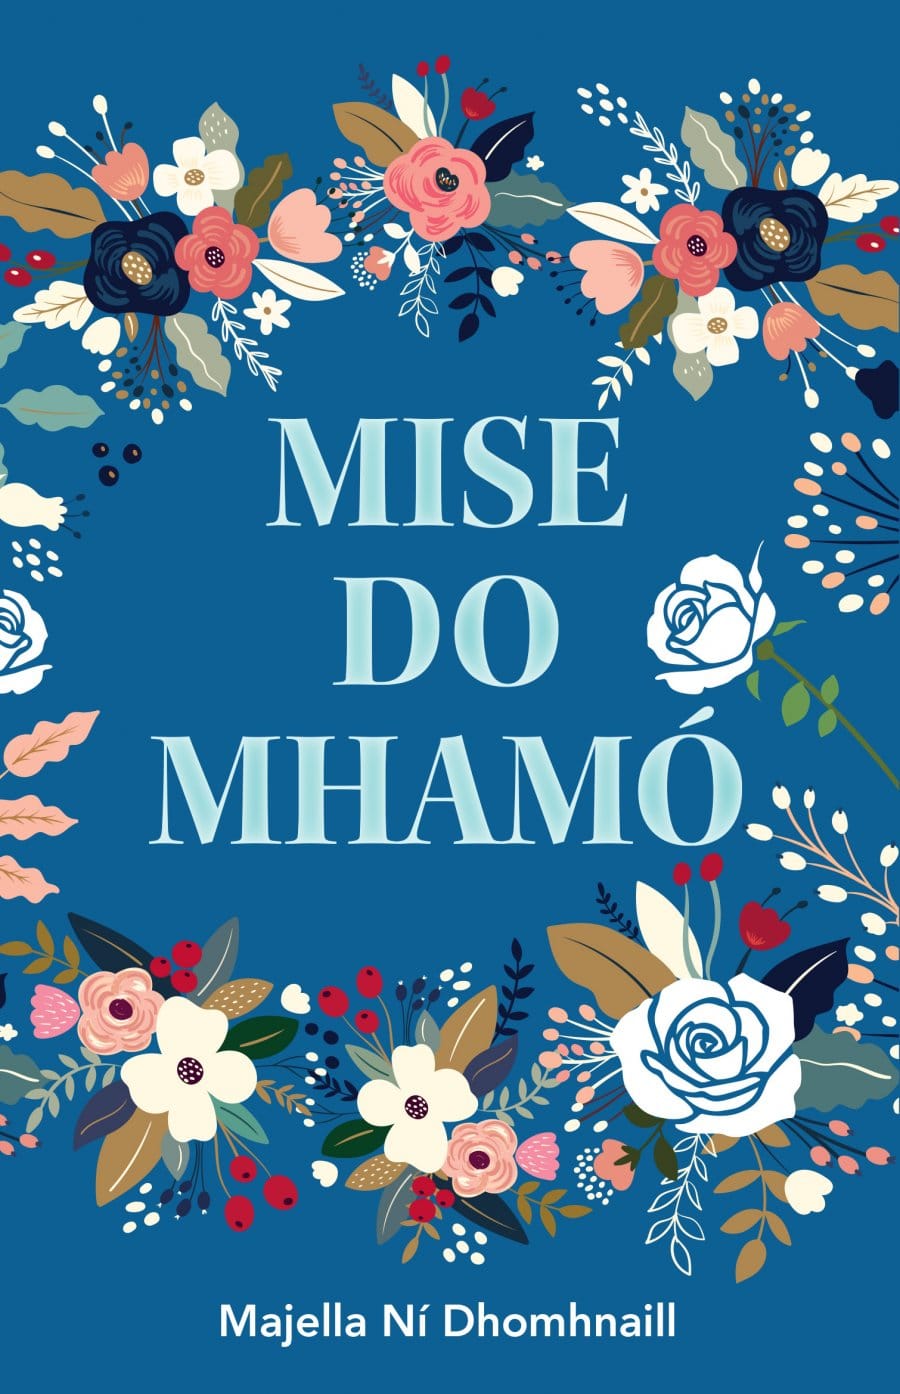 Mise do Mhamó (I'm your Grandma)